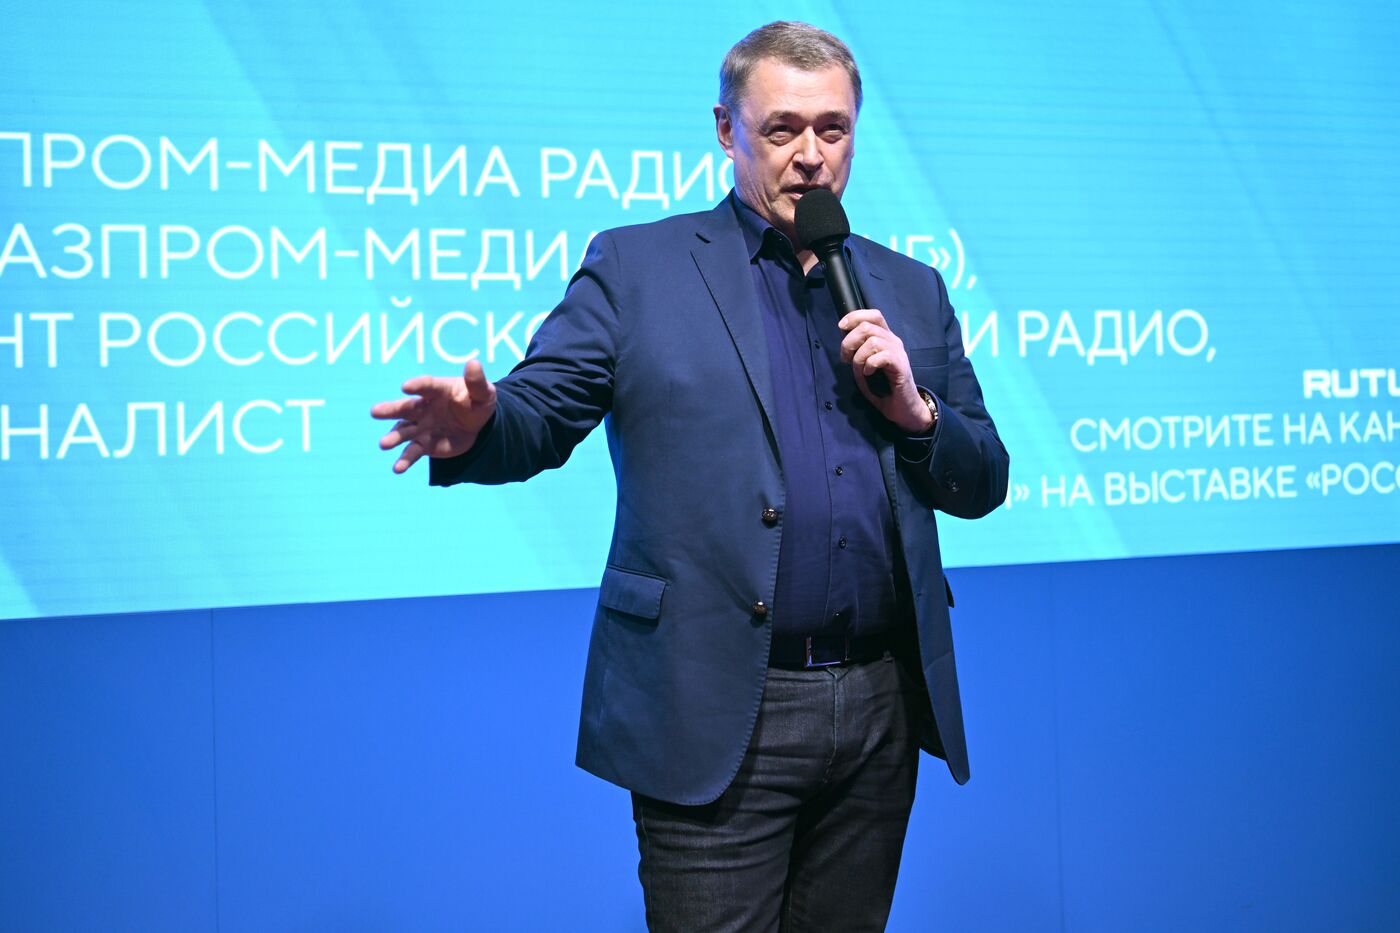 Выставка "Россия". Как стать звездой в профессии и быть счастливым? Лекция президента "Газпром-Медиа Радио"